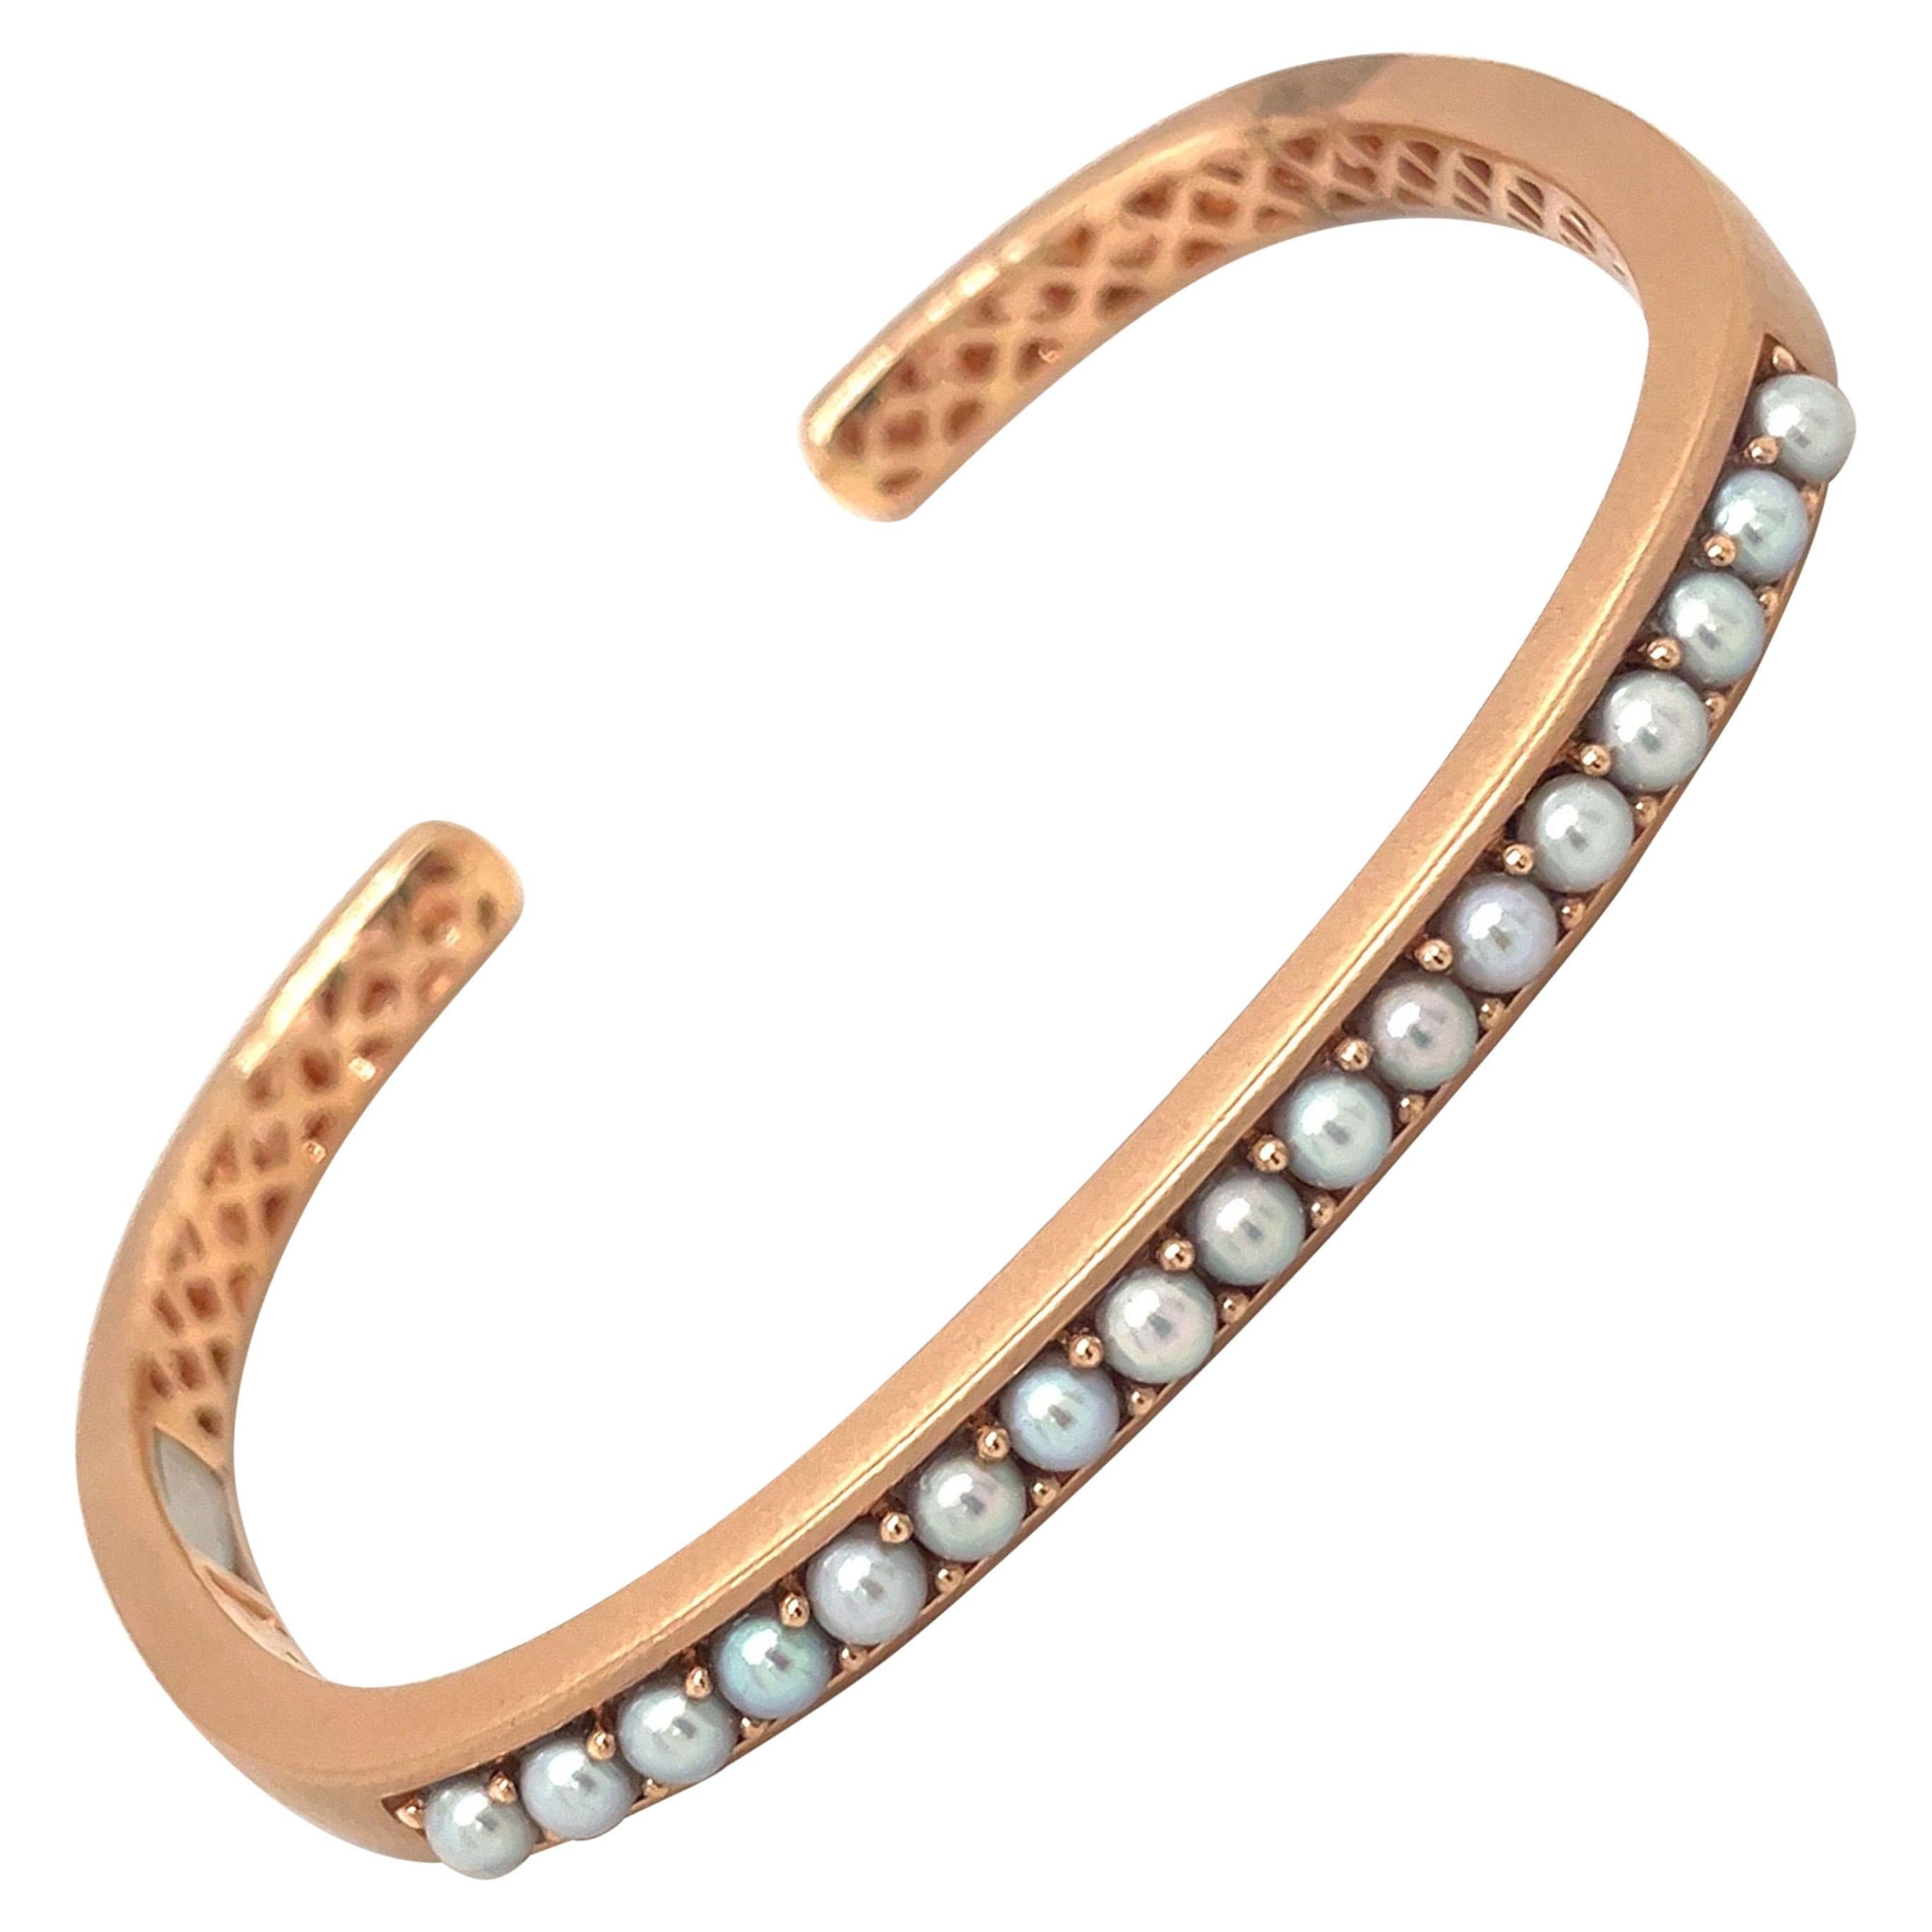 Jane Taylor 18kt Rose Gold Bracelet with Pearls